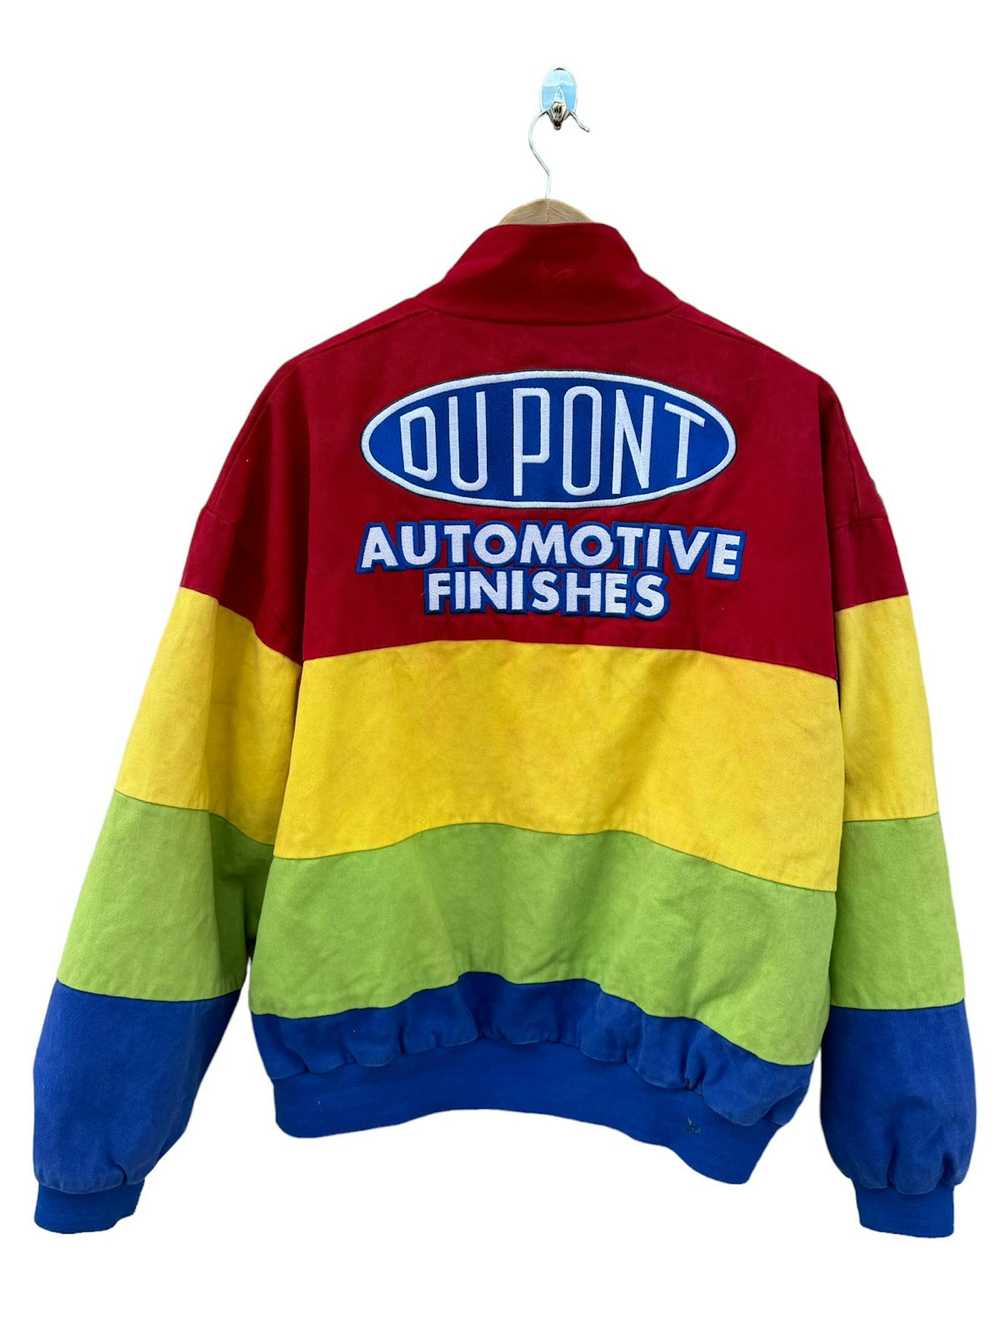 NASCAR × Vintage NASCAR DuPont Vintage Jacket Gor… - image 2